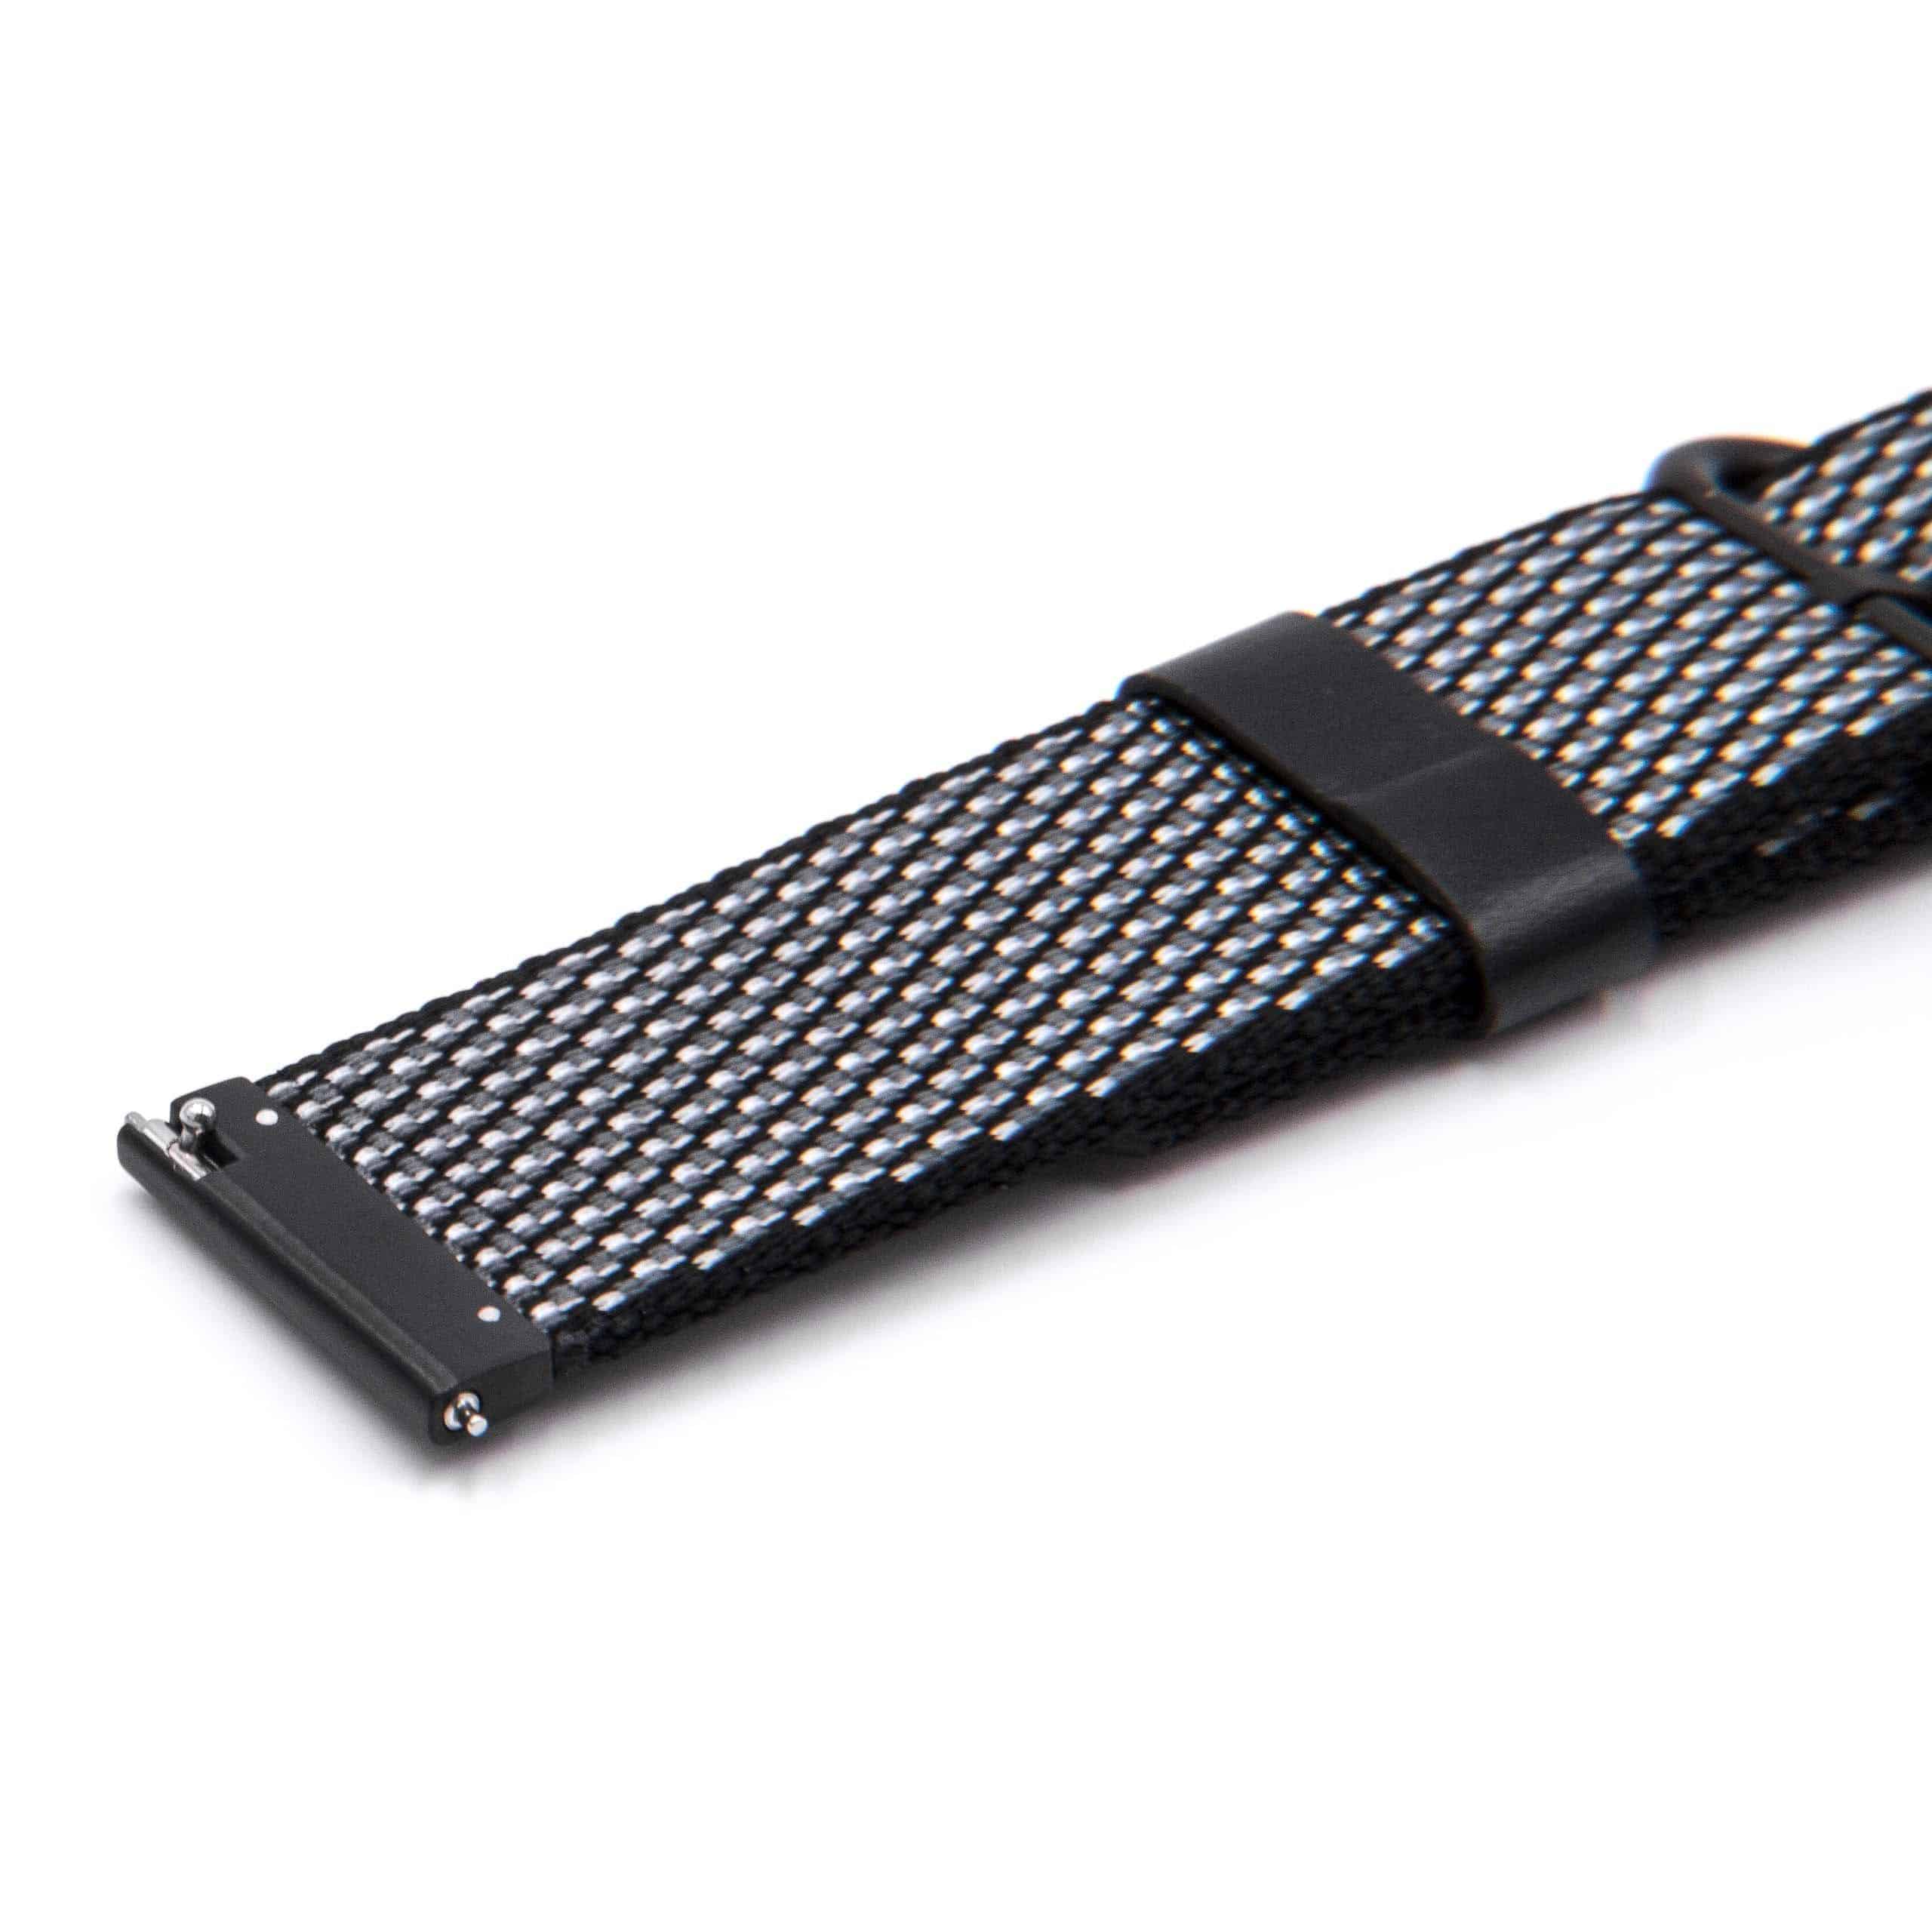 cinturino per LG Smartwatch ecc - 12,3cm + 8,5 cm lunghezza, 22mm ampiezza, nylon, nero, bianco